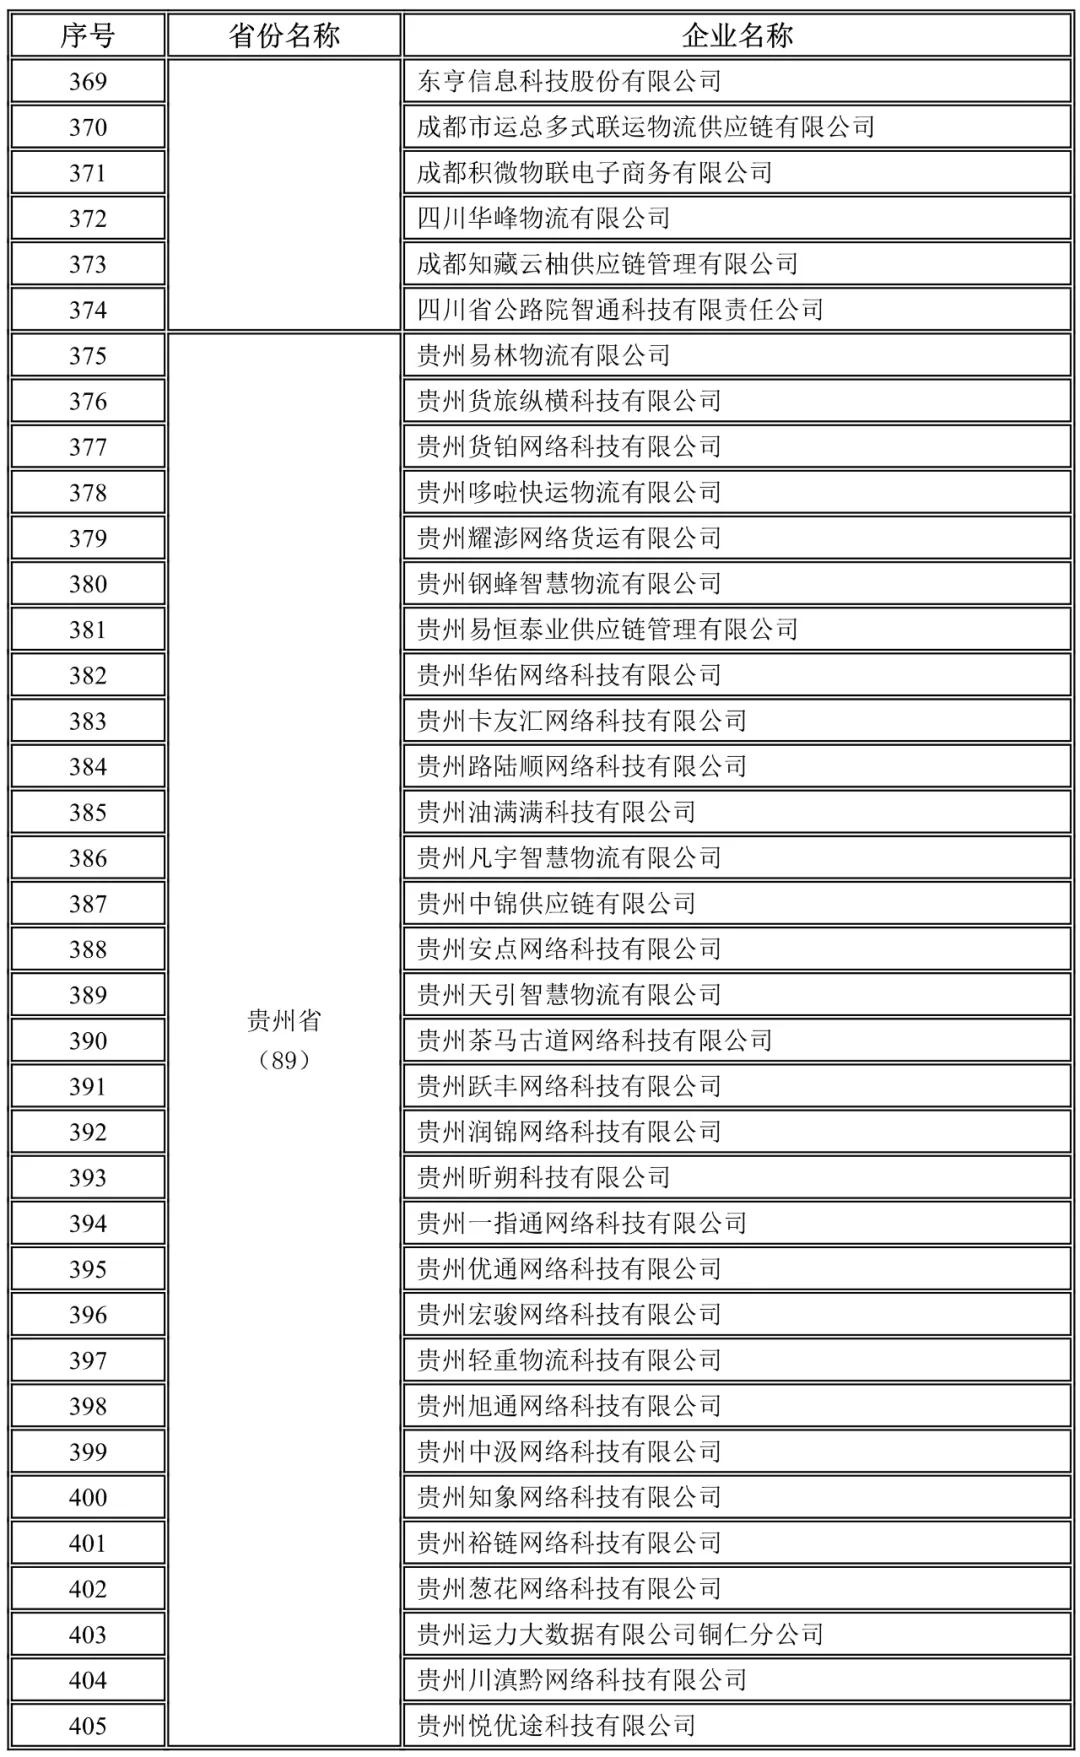 四川,贵州未上传驾驶员位置单证信息企业名录